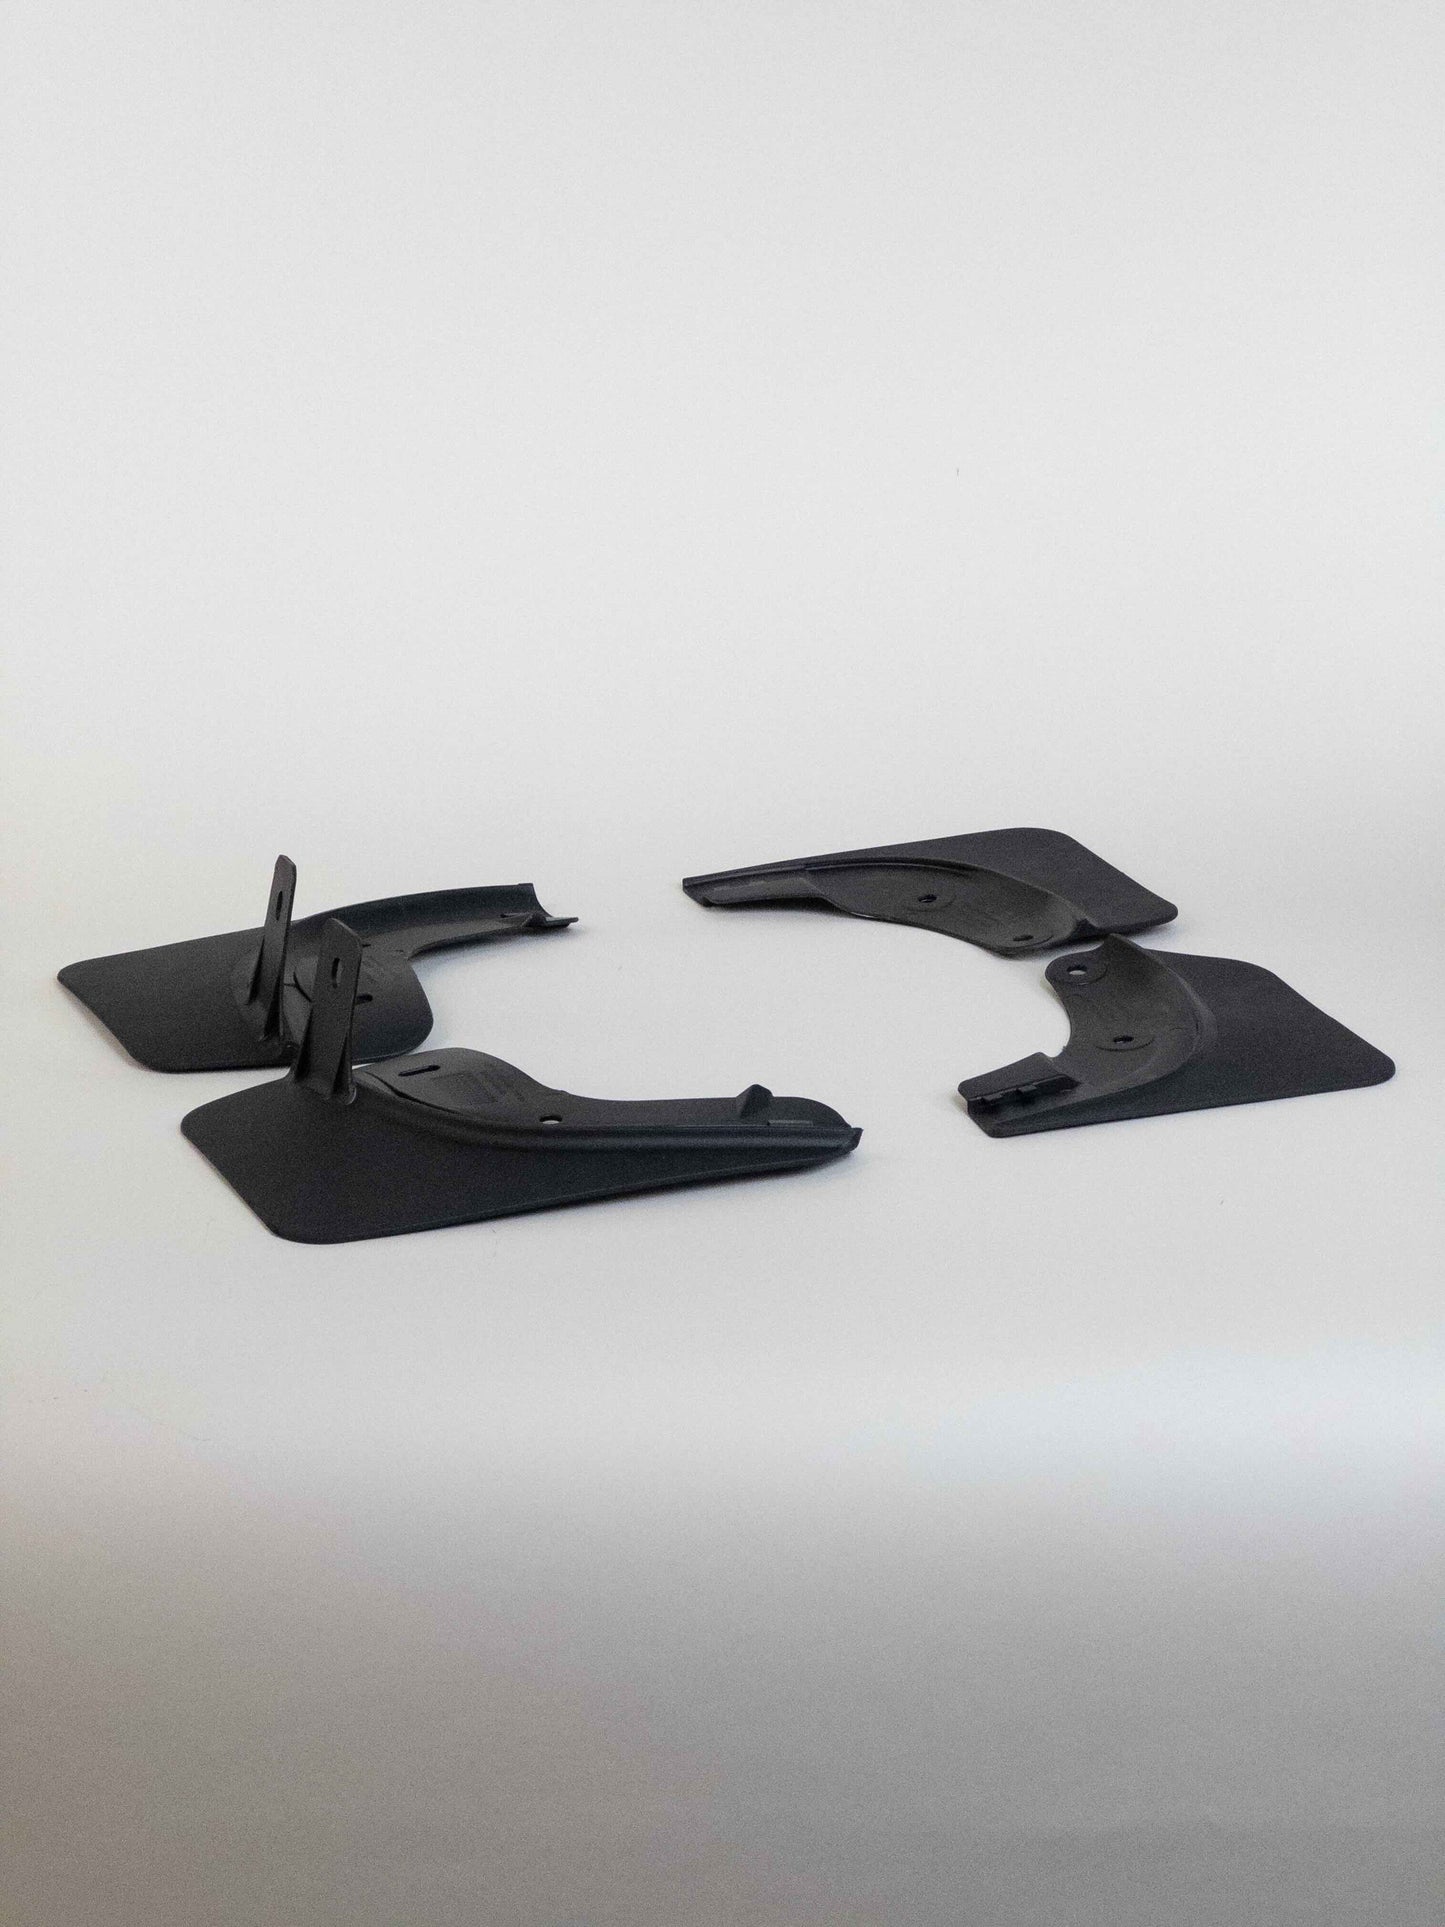 Model Y Splash guard - matt svart sterk modell blekk beskyttende film